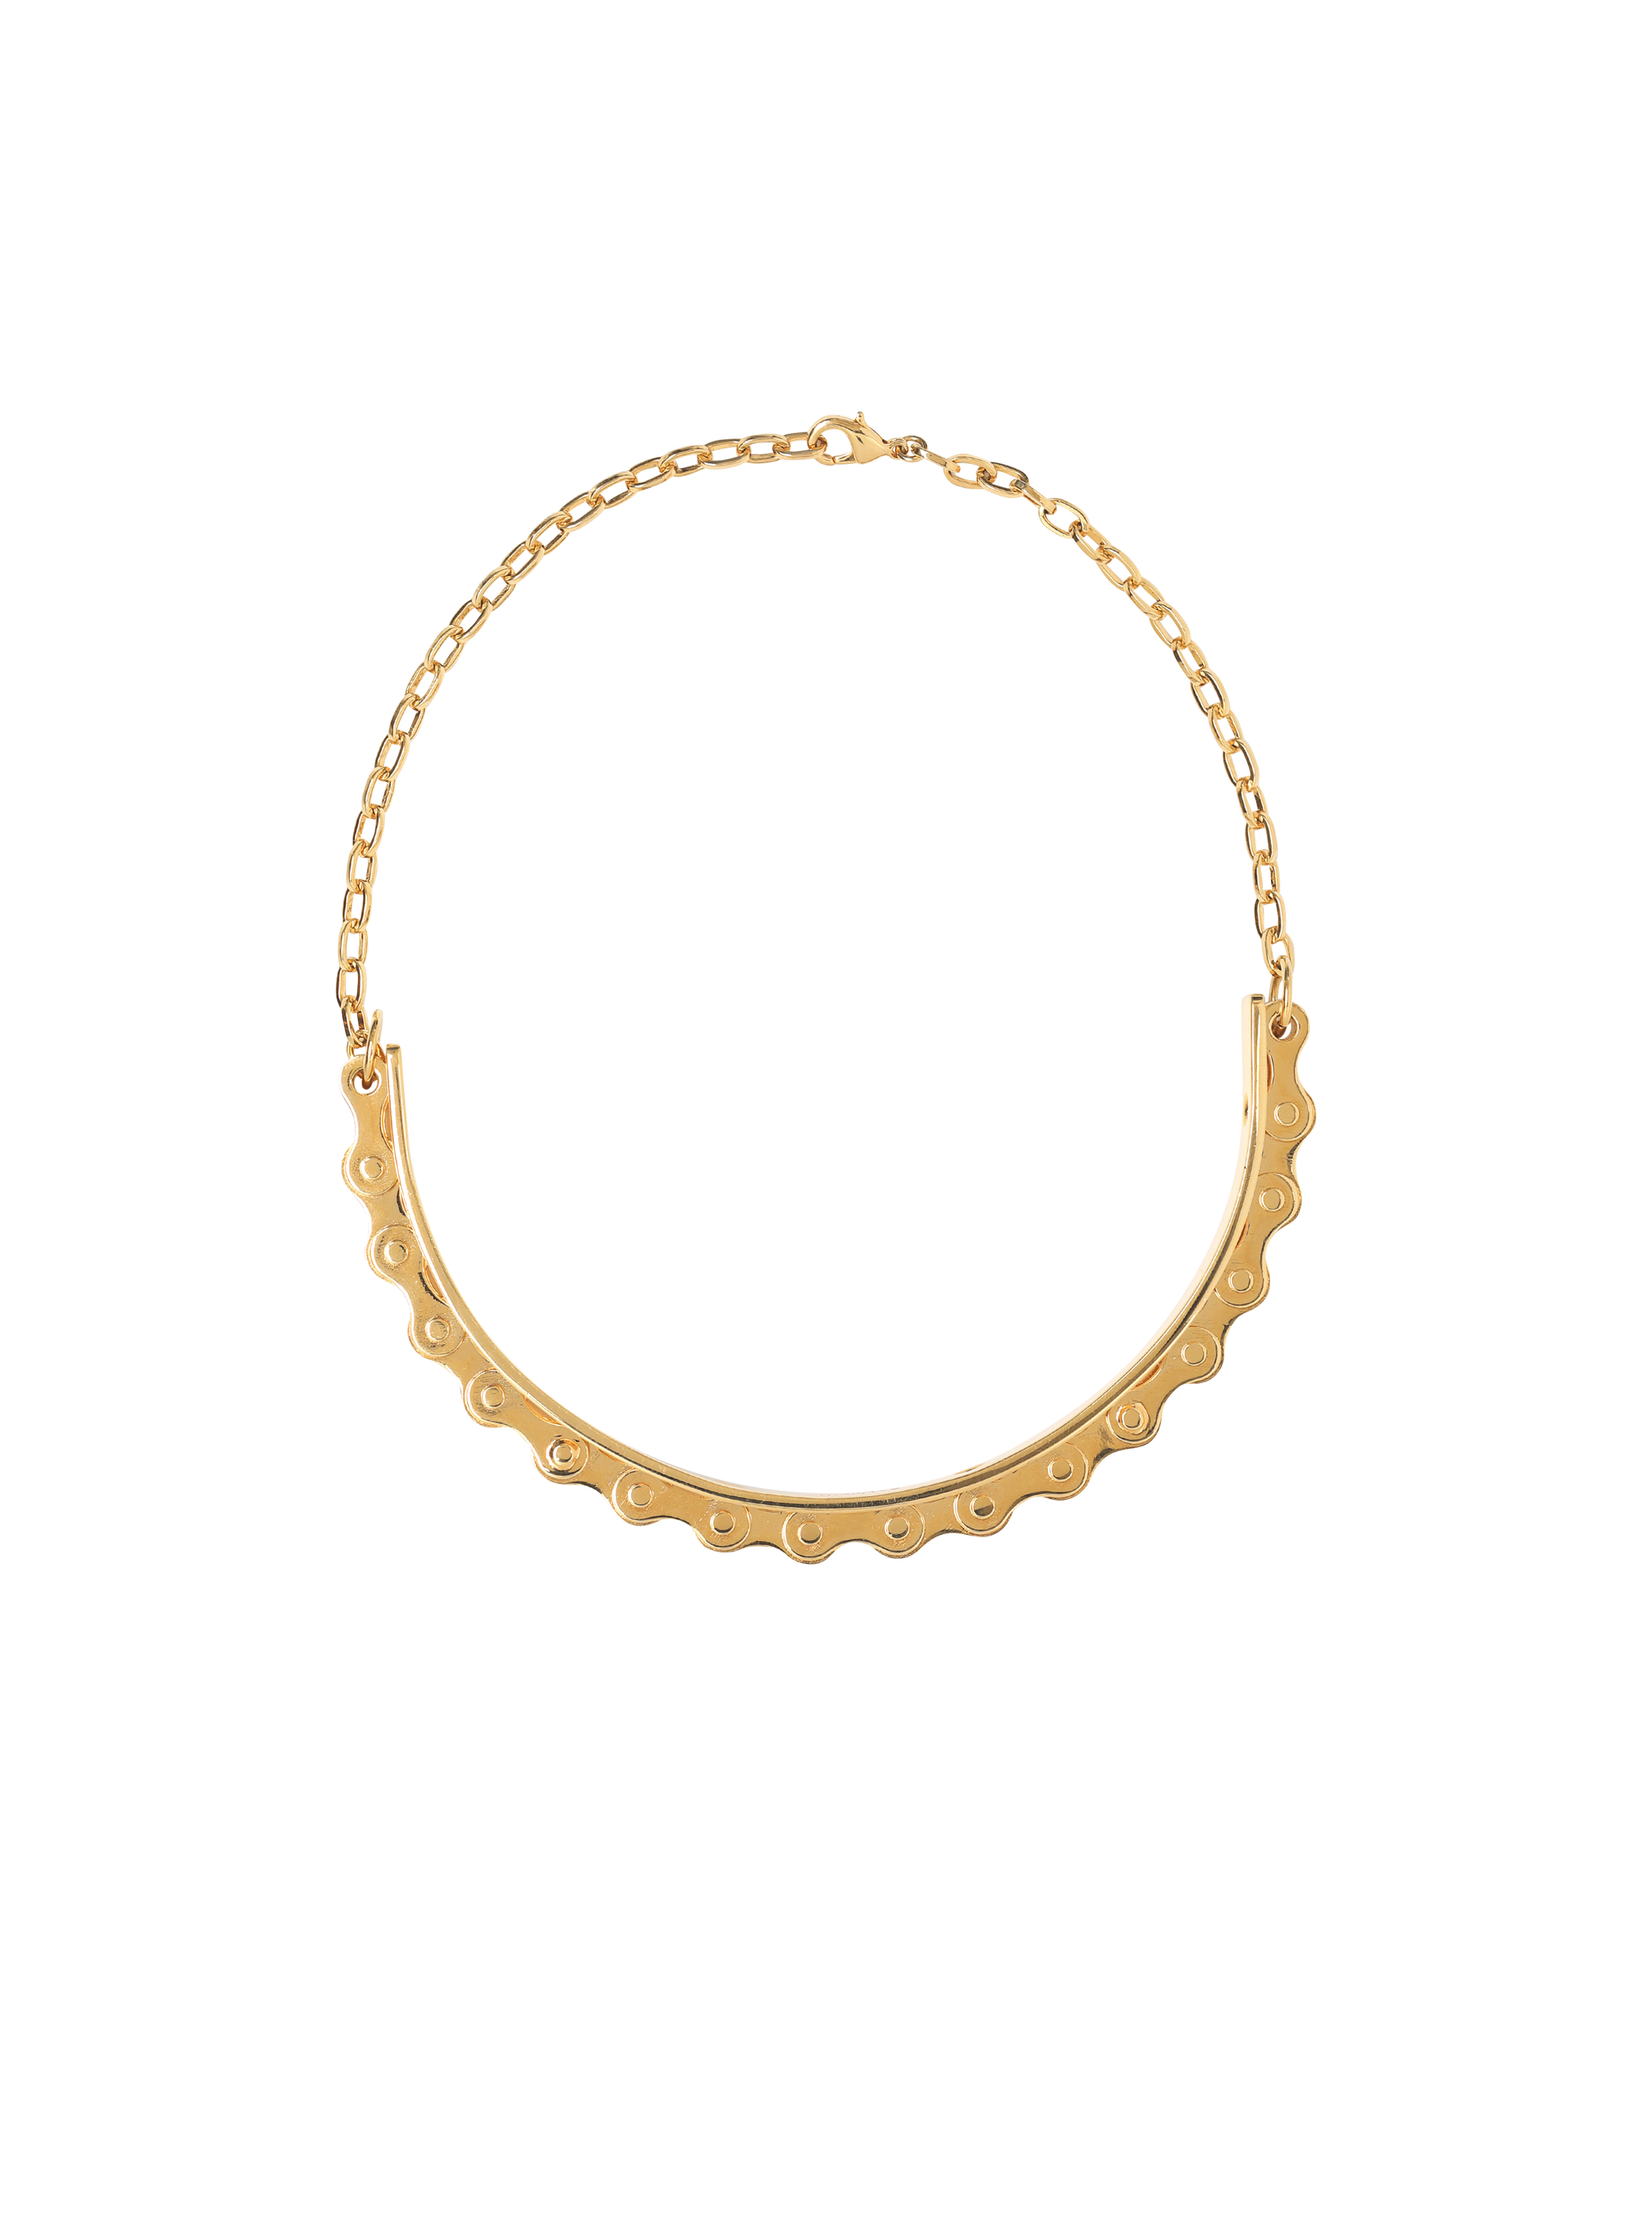 Brass biker chain necklace, gold